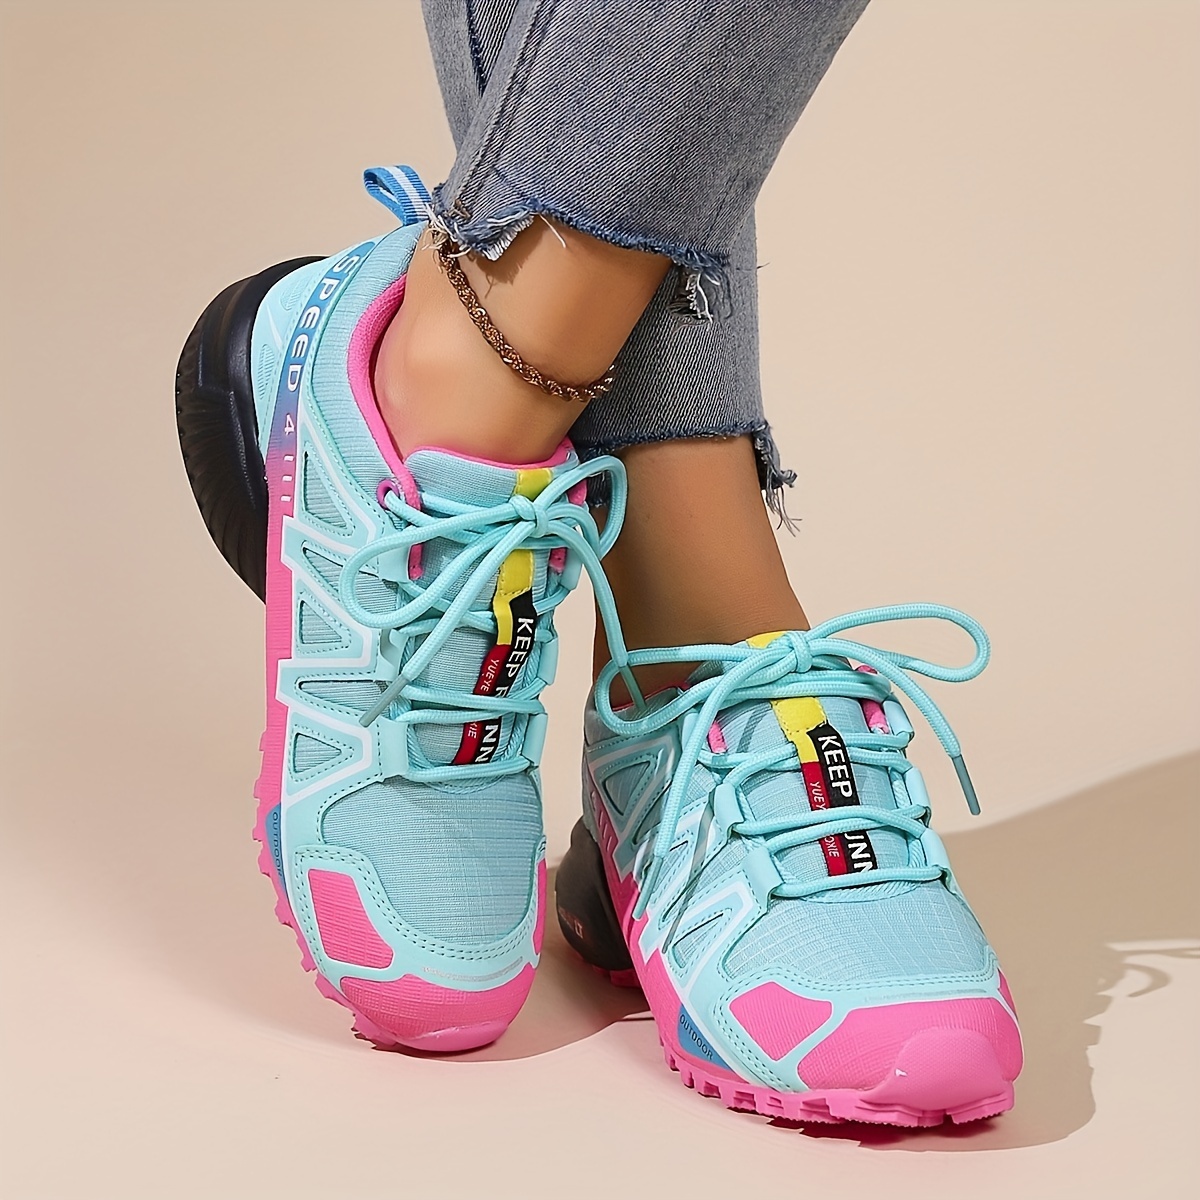 Zapatillas para Andar Mujer Zapatos Casuales Corriendo Caminando  Transpirable Ligero Cómodo Zapatos de Verano para Mujer de Deporte y al  aire libre